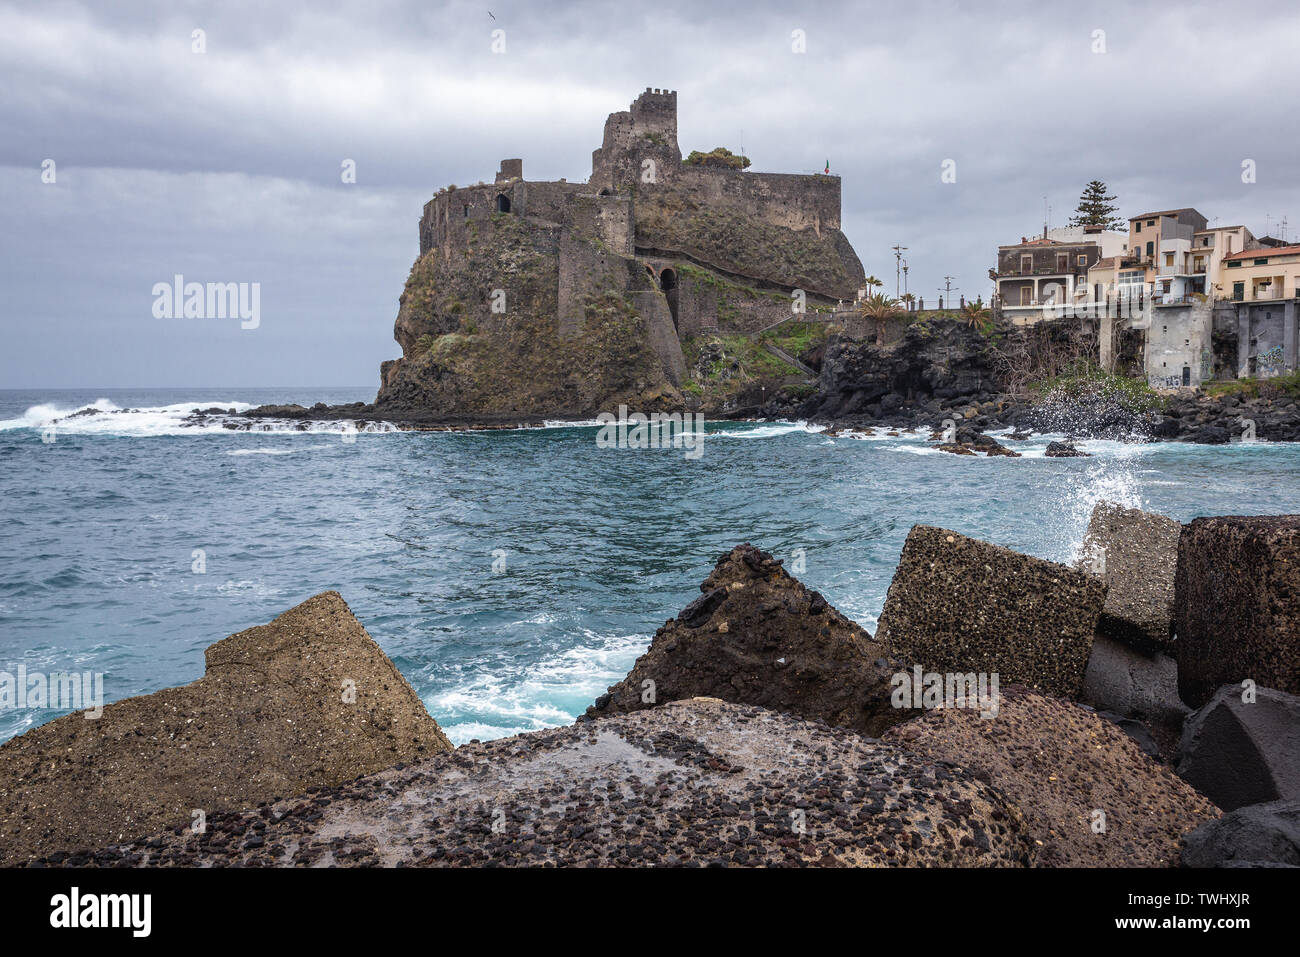 Castello normanno di Aci Castello comune nella città metropolitana di Catania sulla isola di Sicilia in Italia Foto Stock